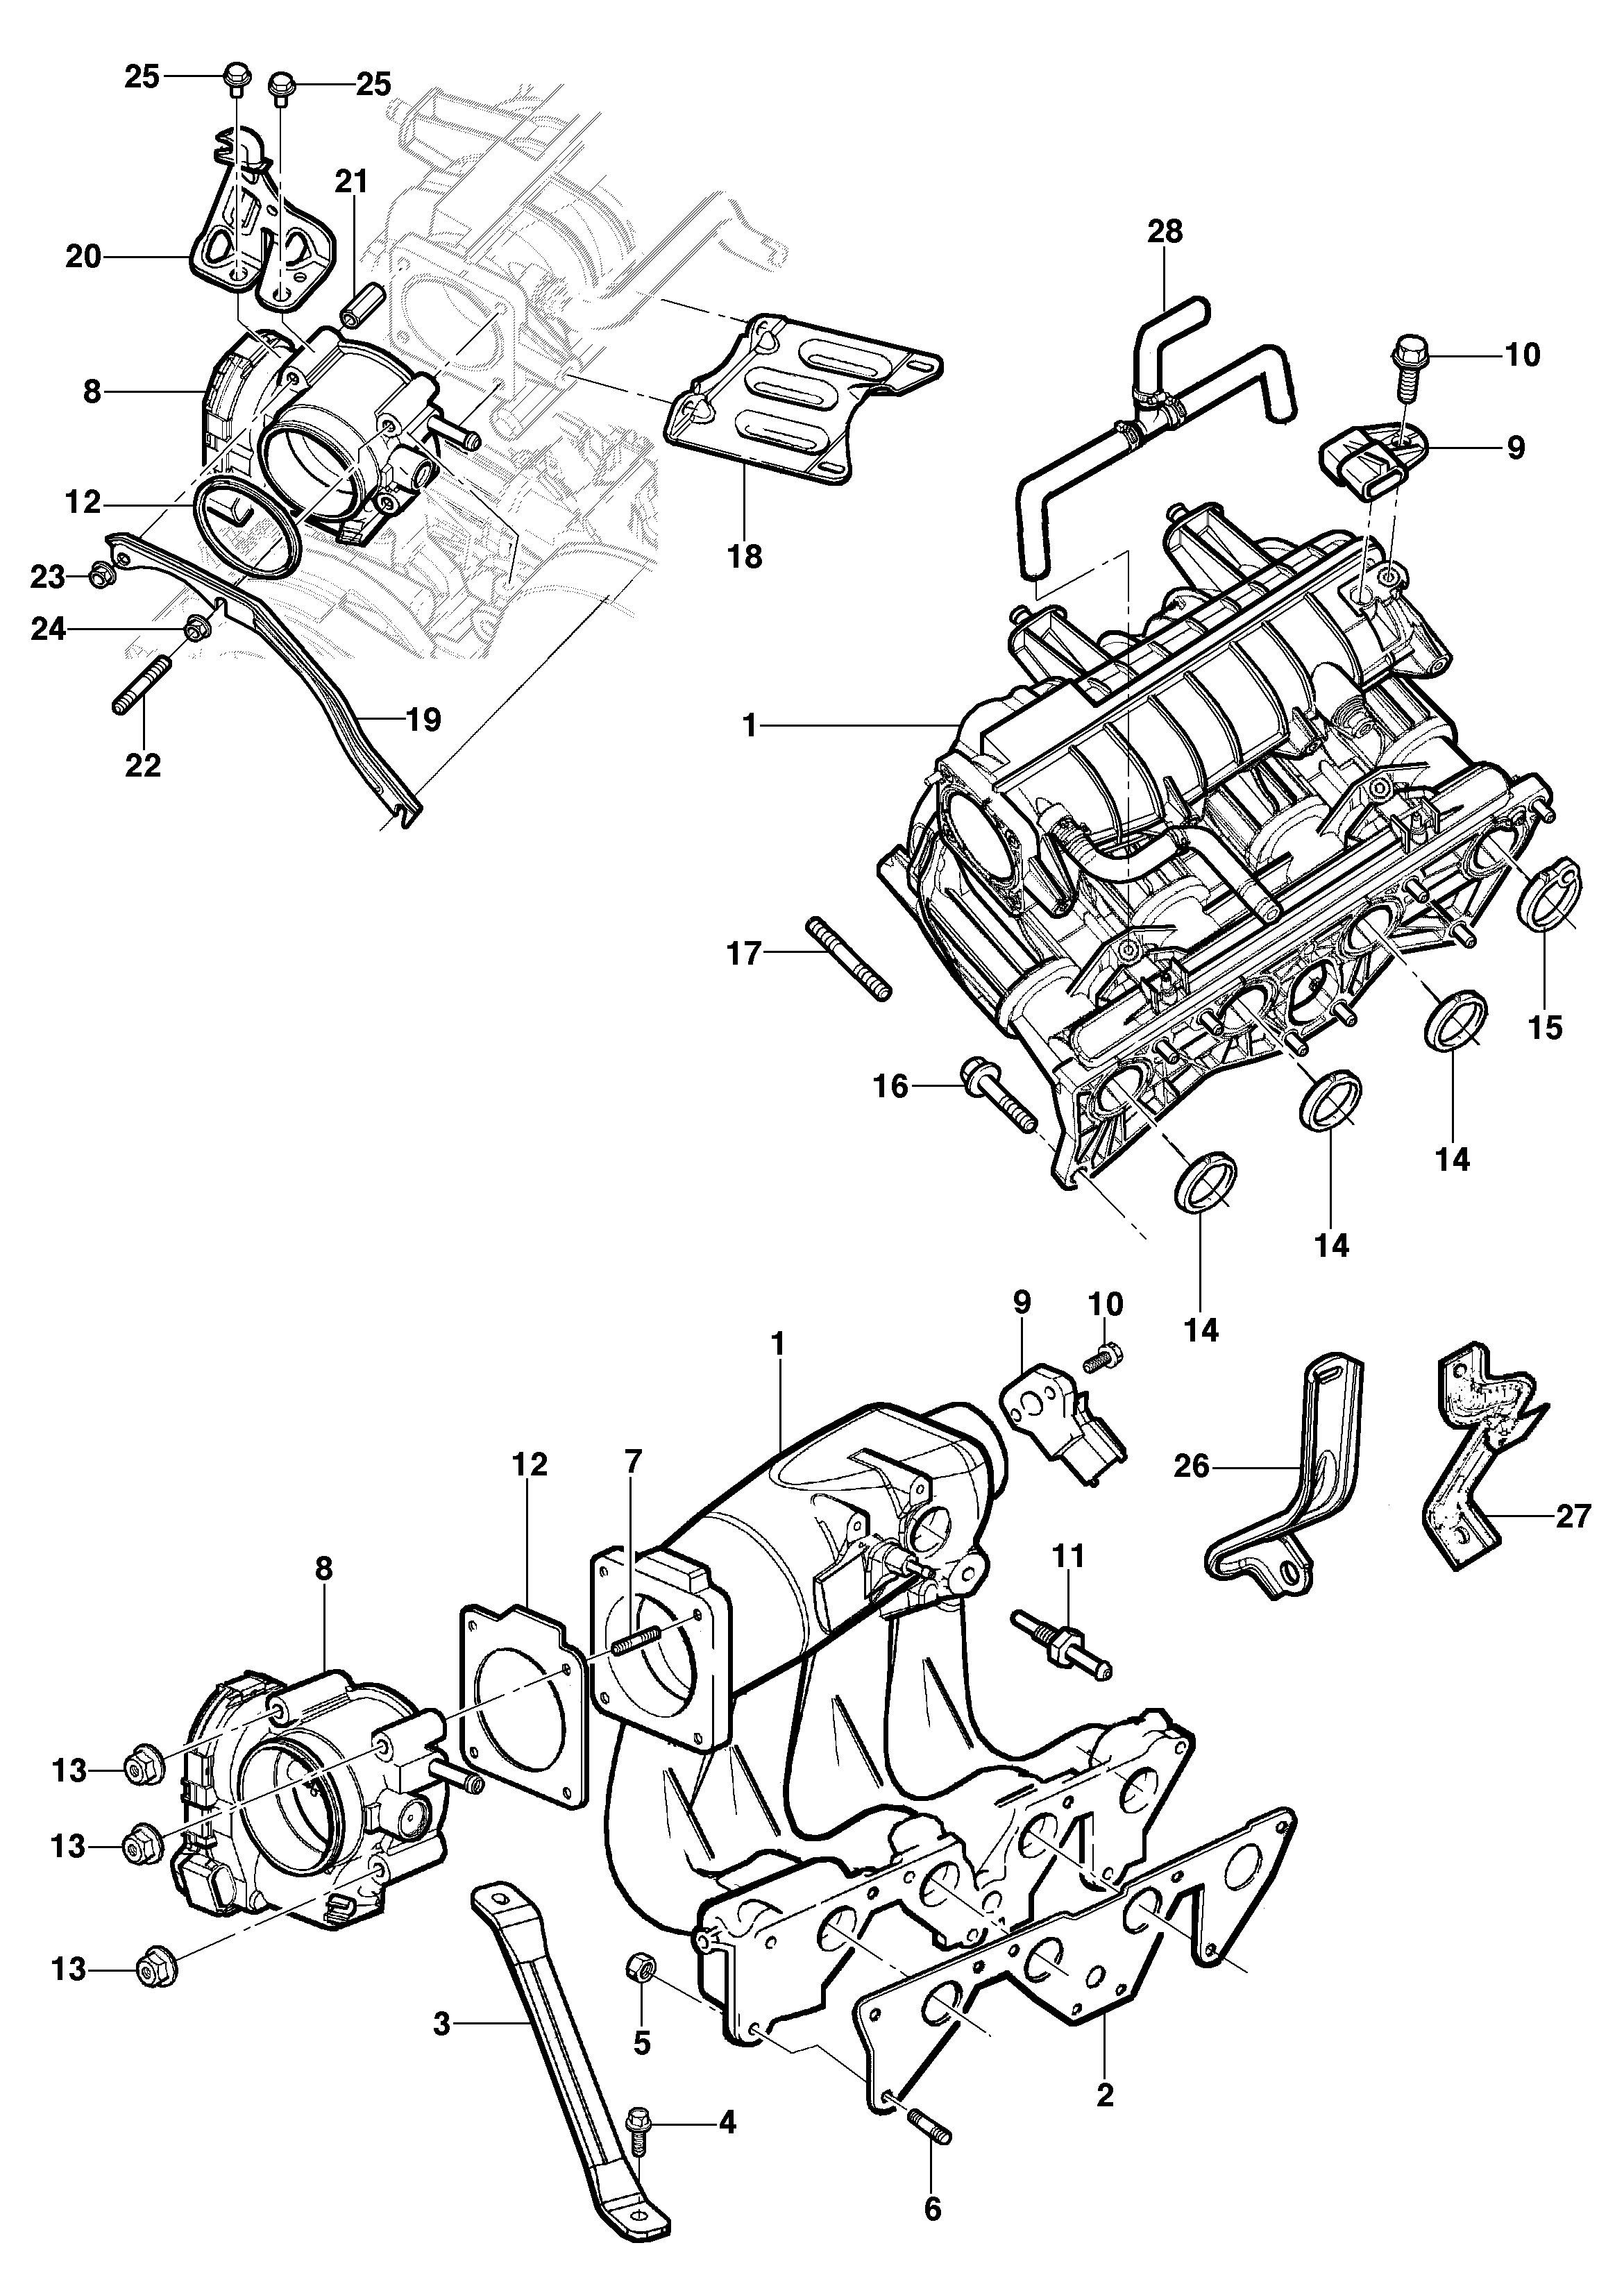 Intake manifold - 8V engine